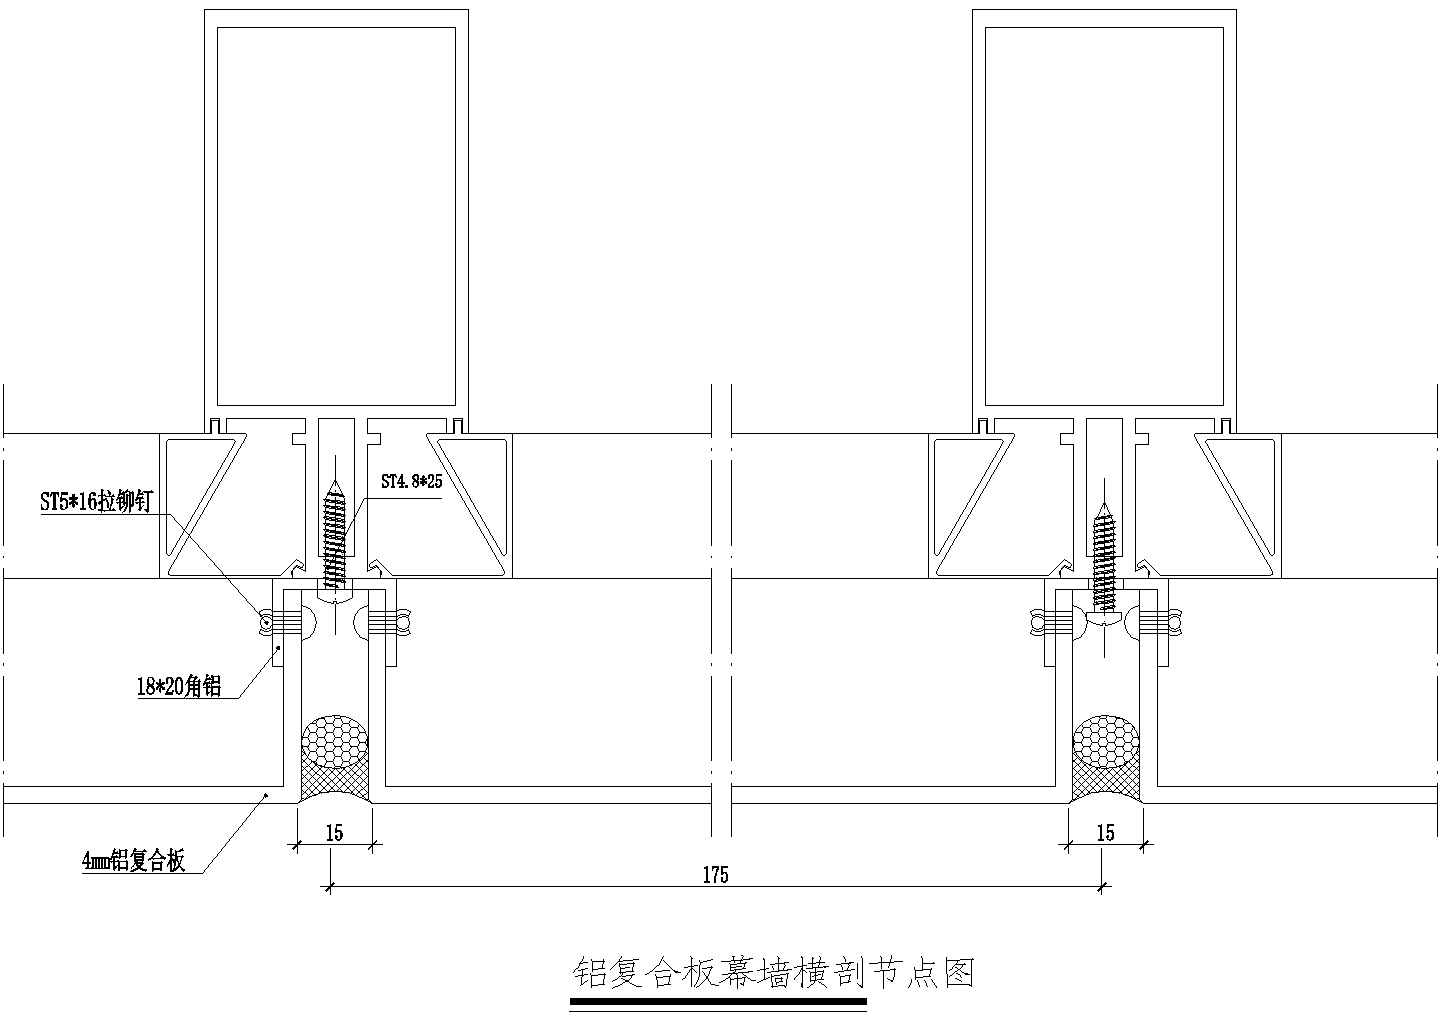 铝复合板幕墙横剖节点图CAD施工图设计(0001)